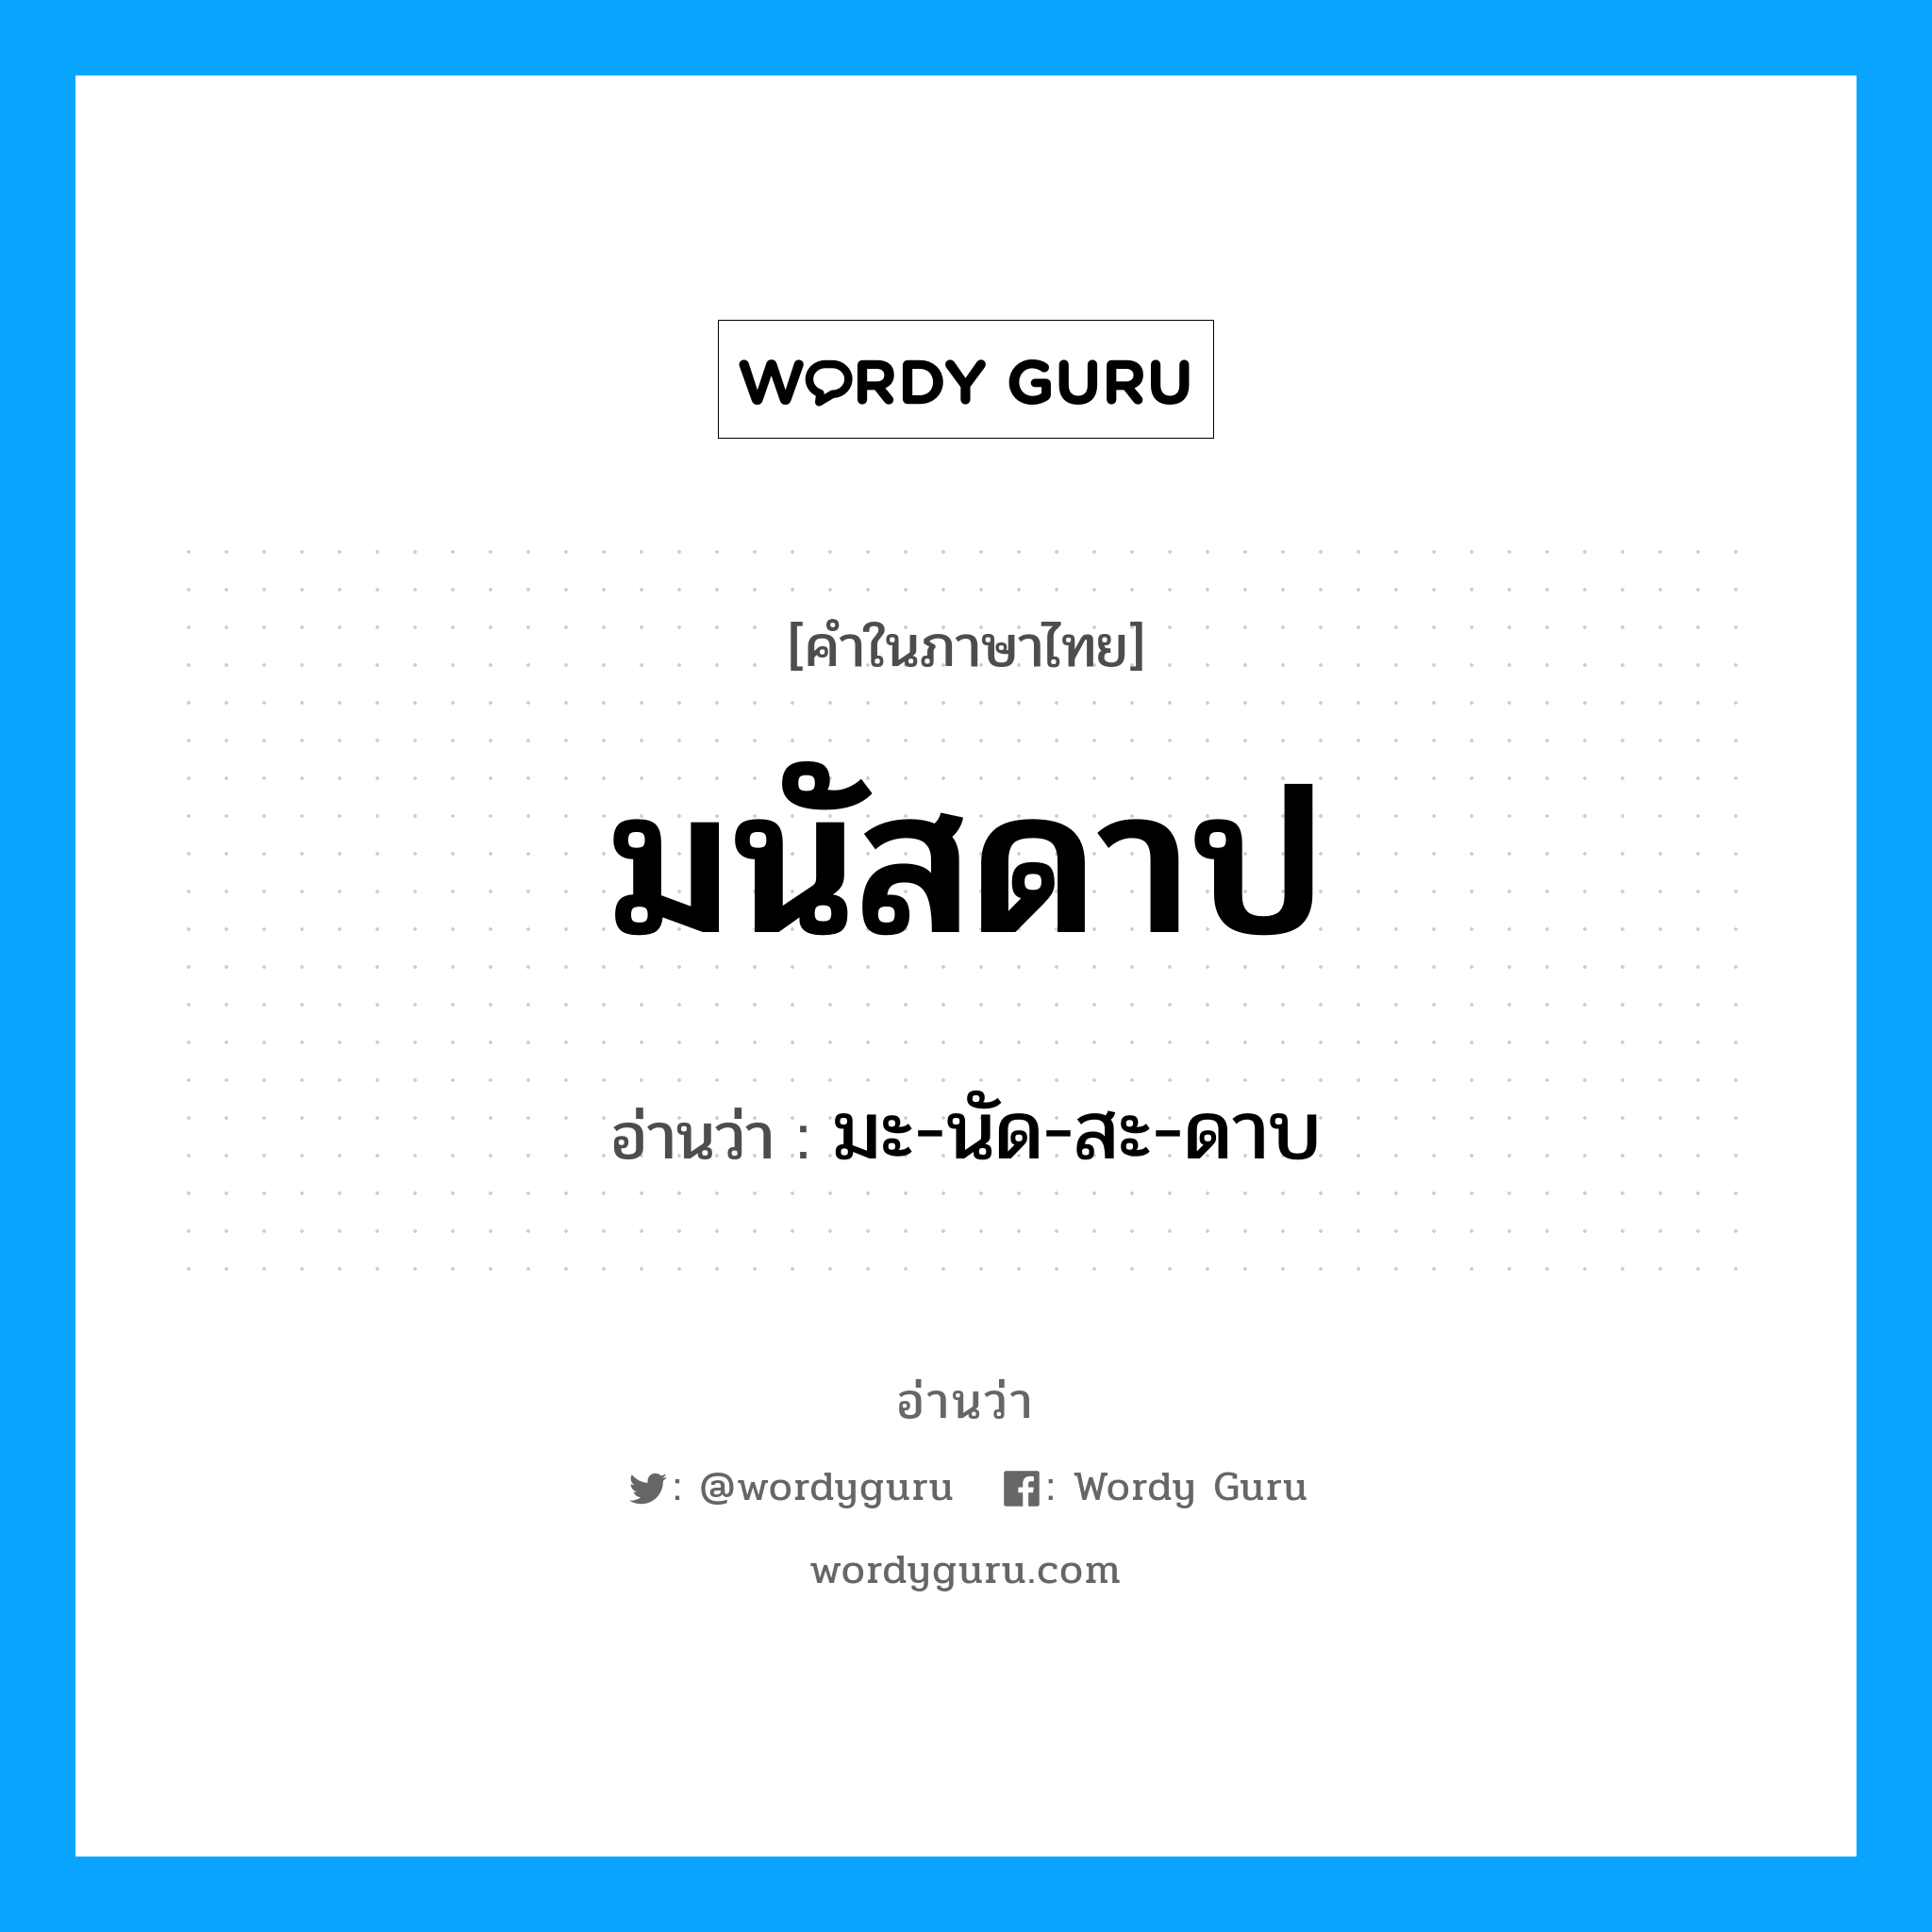 มะ-นัด-สะ-ดาบ เป็นคำอ่านของคำไหน?, คำในภาษาไทย มะ-นัด-สะ-ดาบ อ่านว่า มนัสดาป